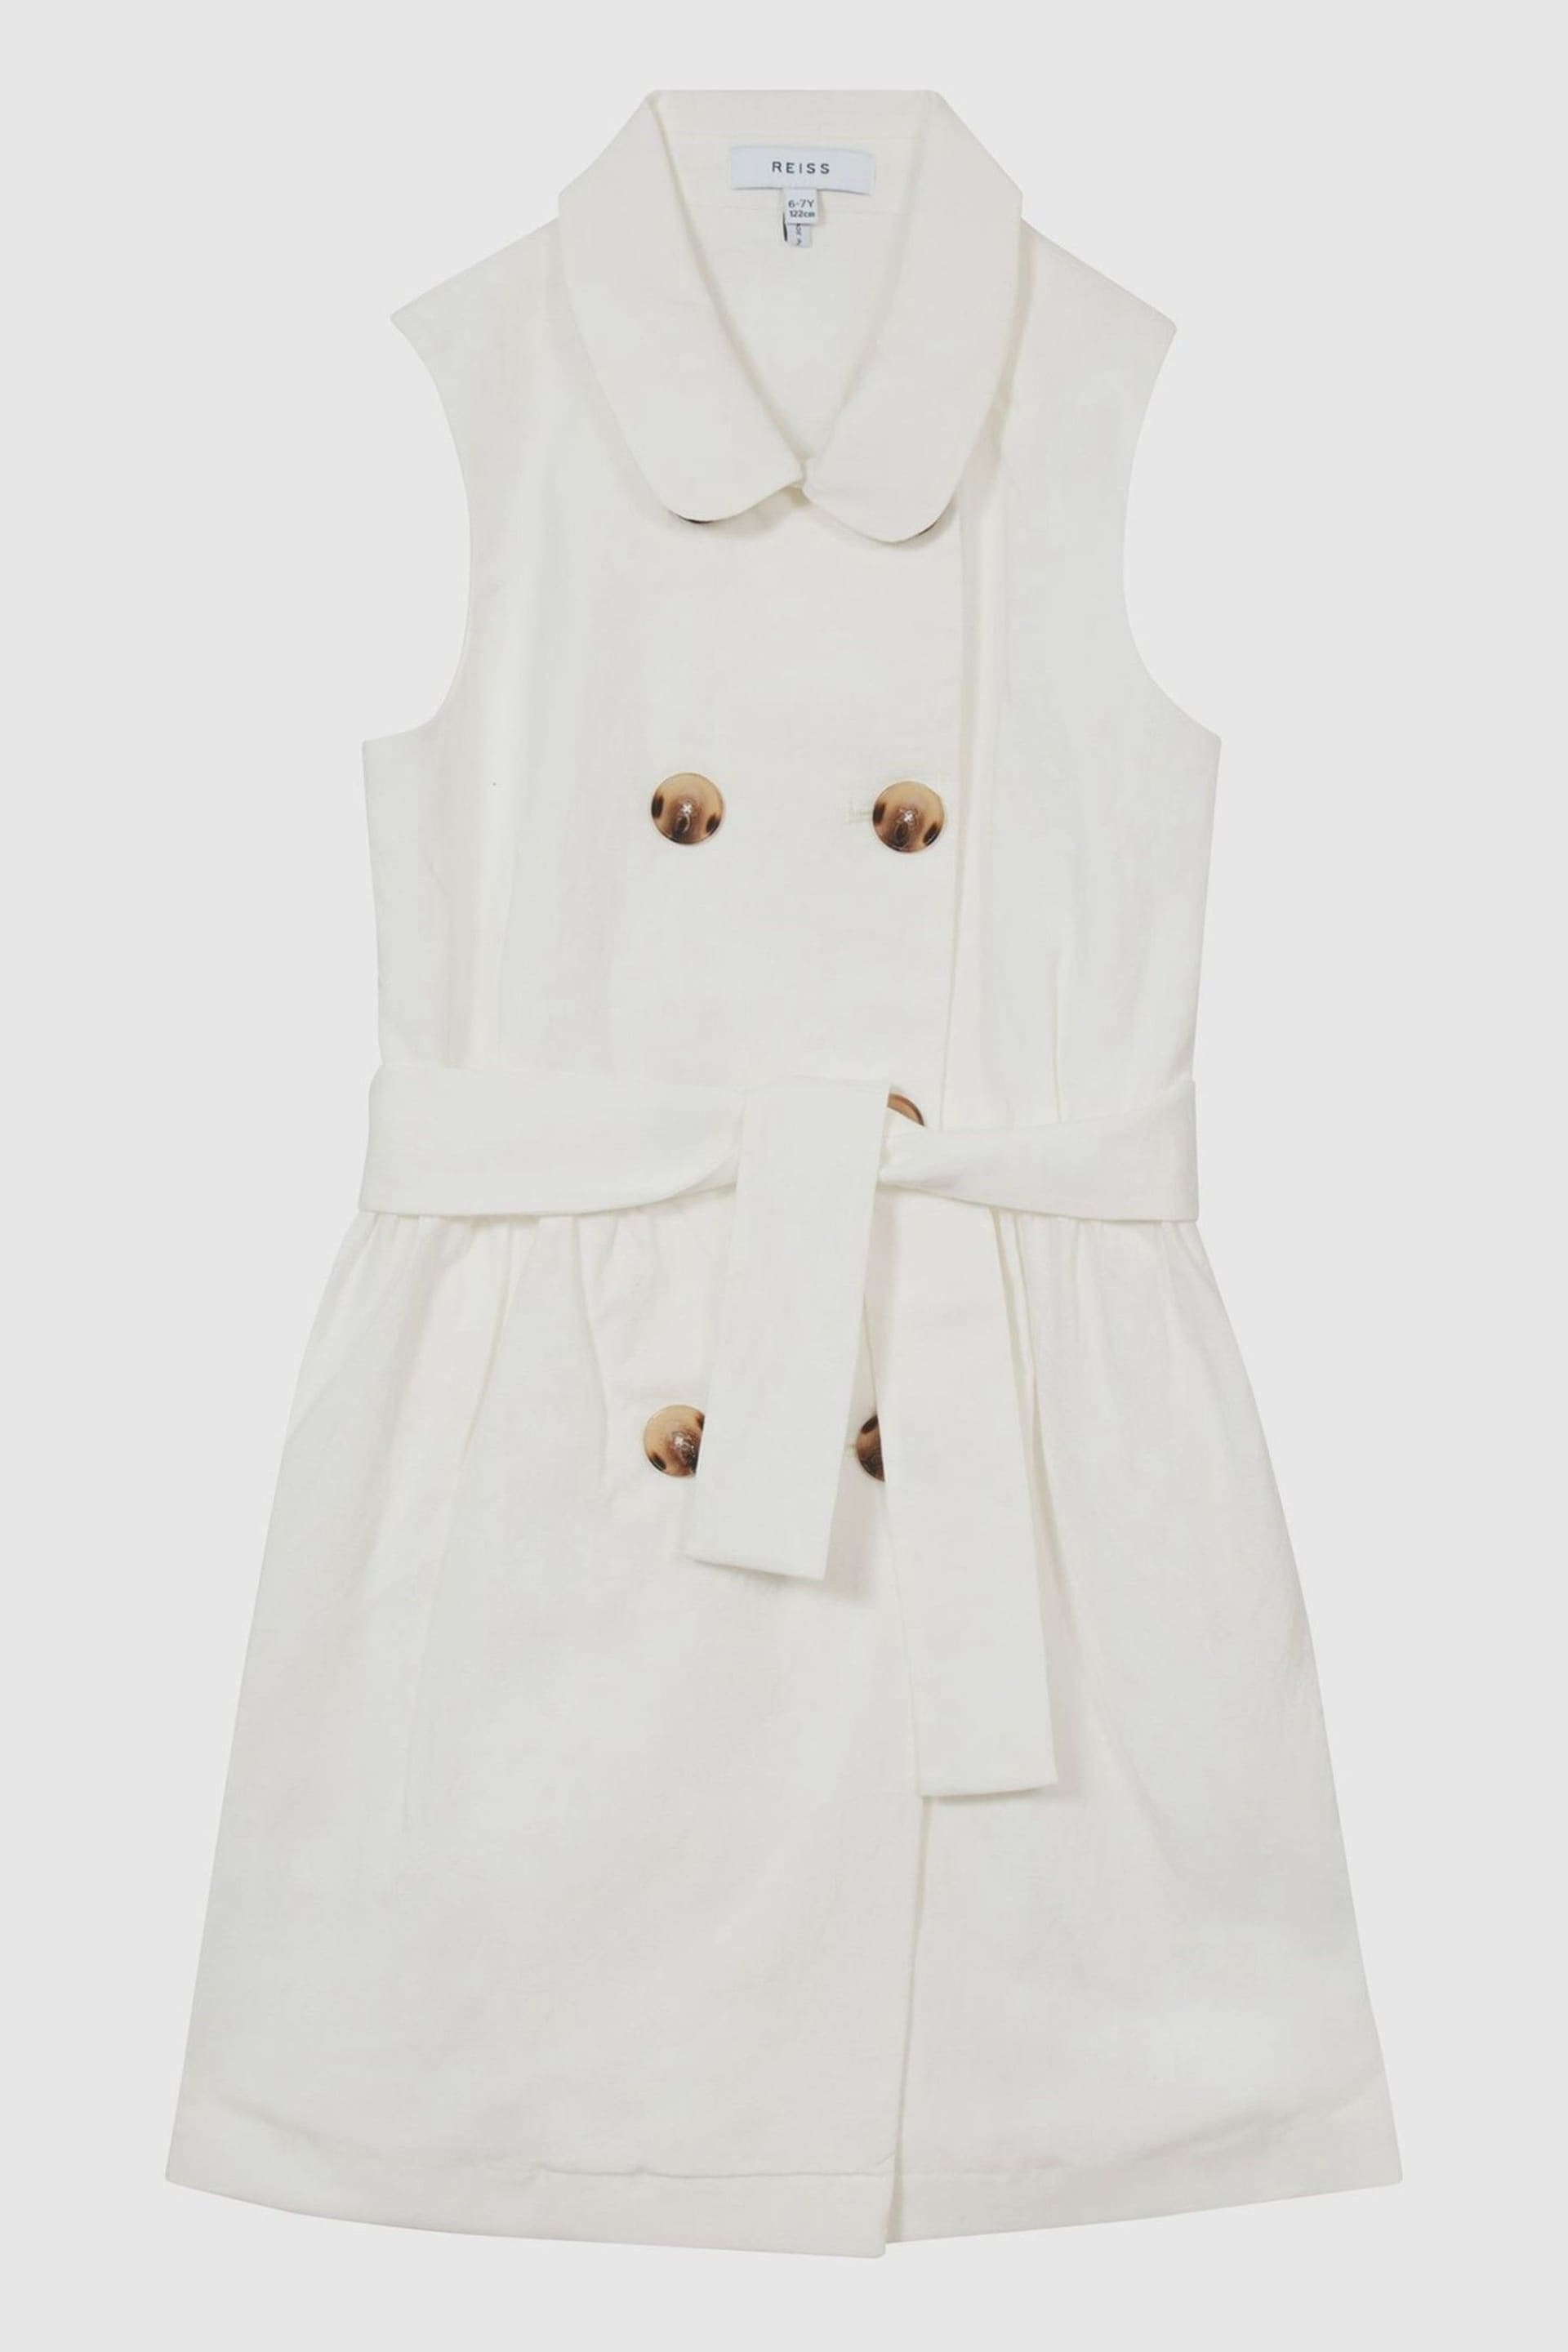 Reiss White Dana Junior Linen Blend Mini Dress - Image 1 of 2